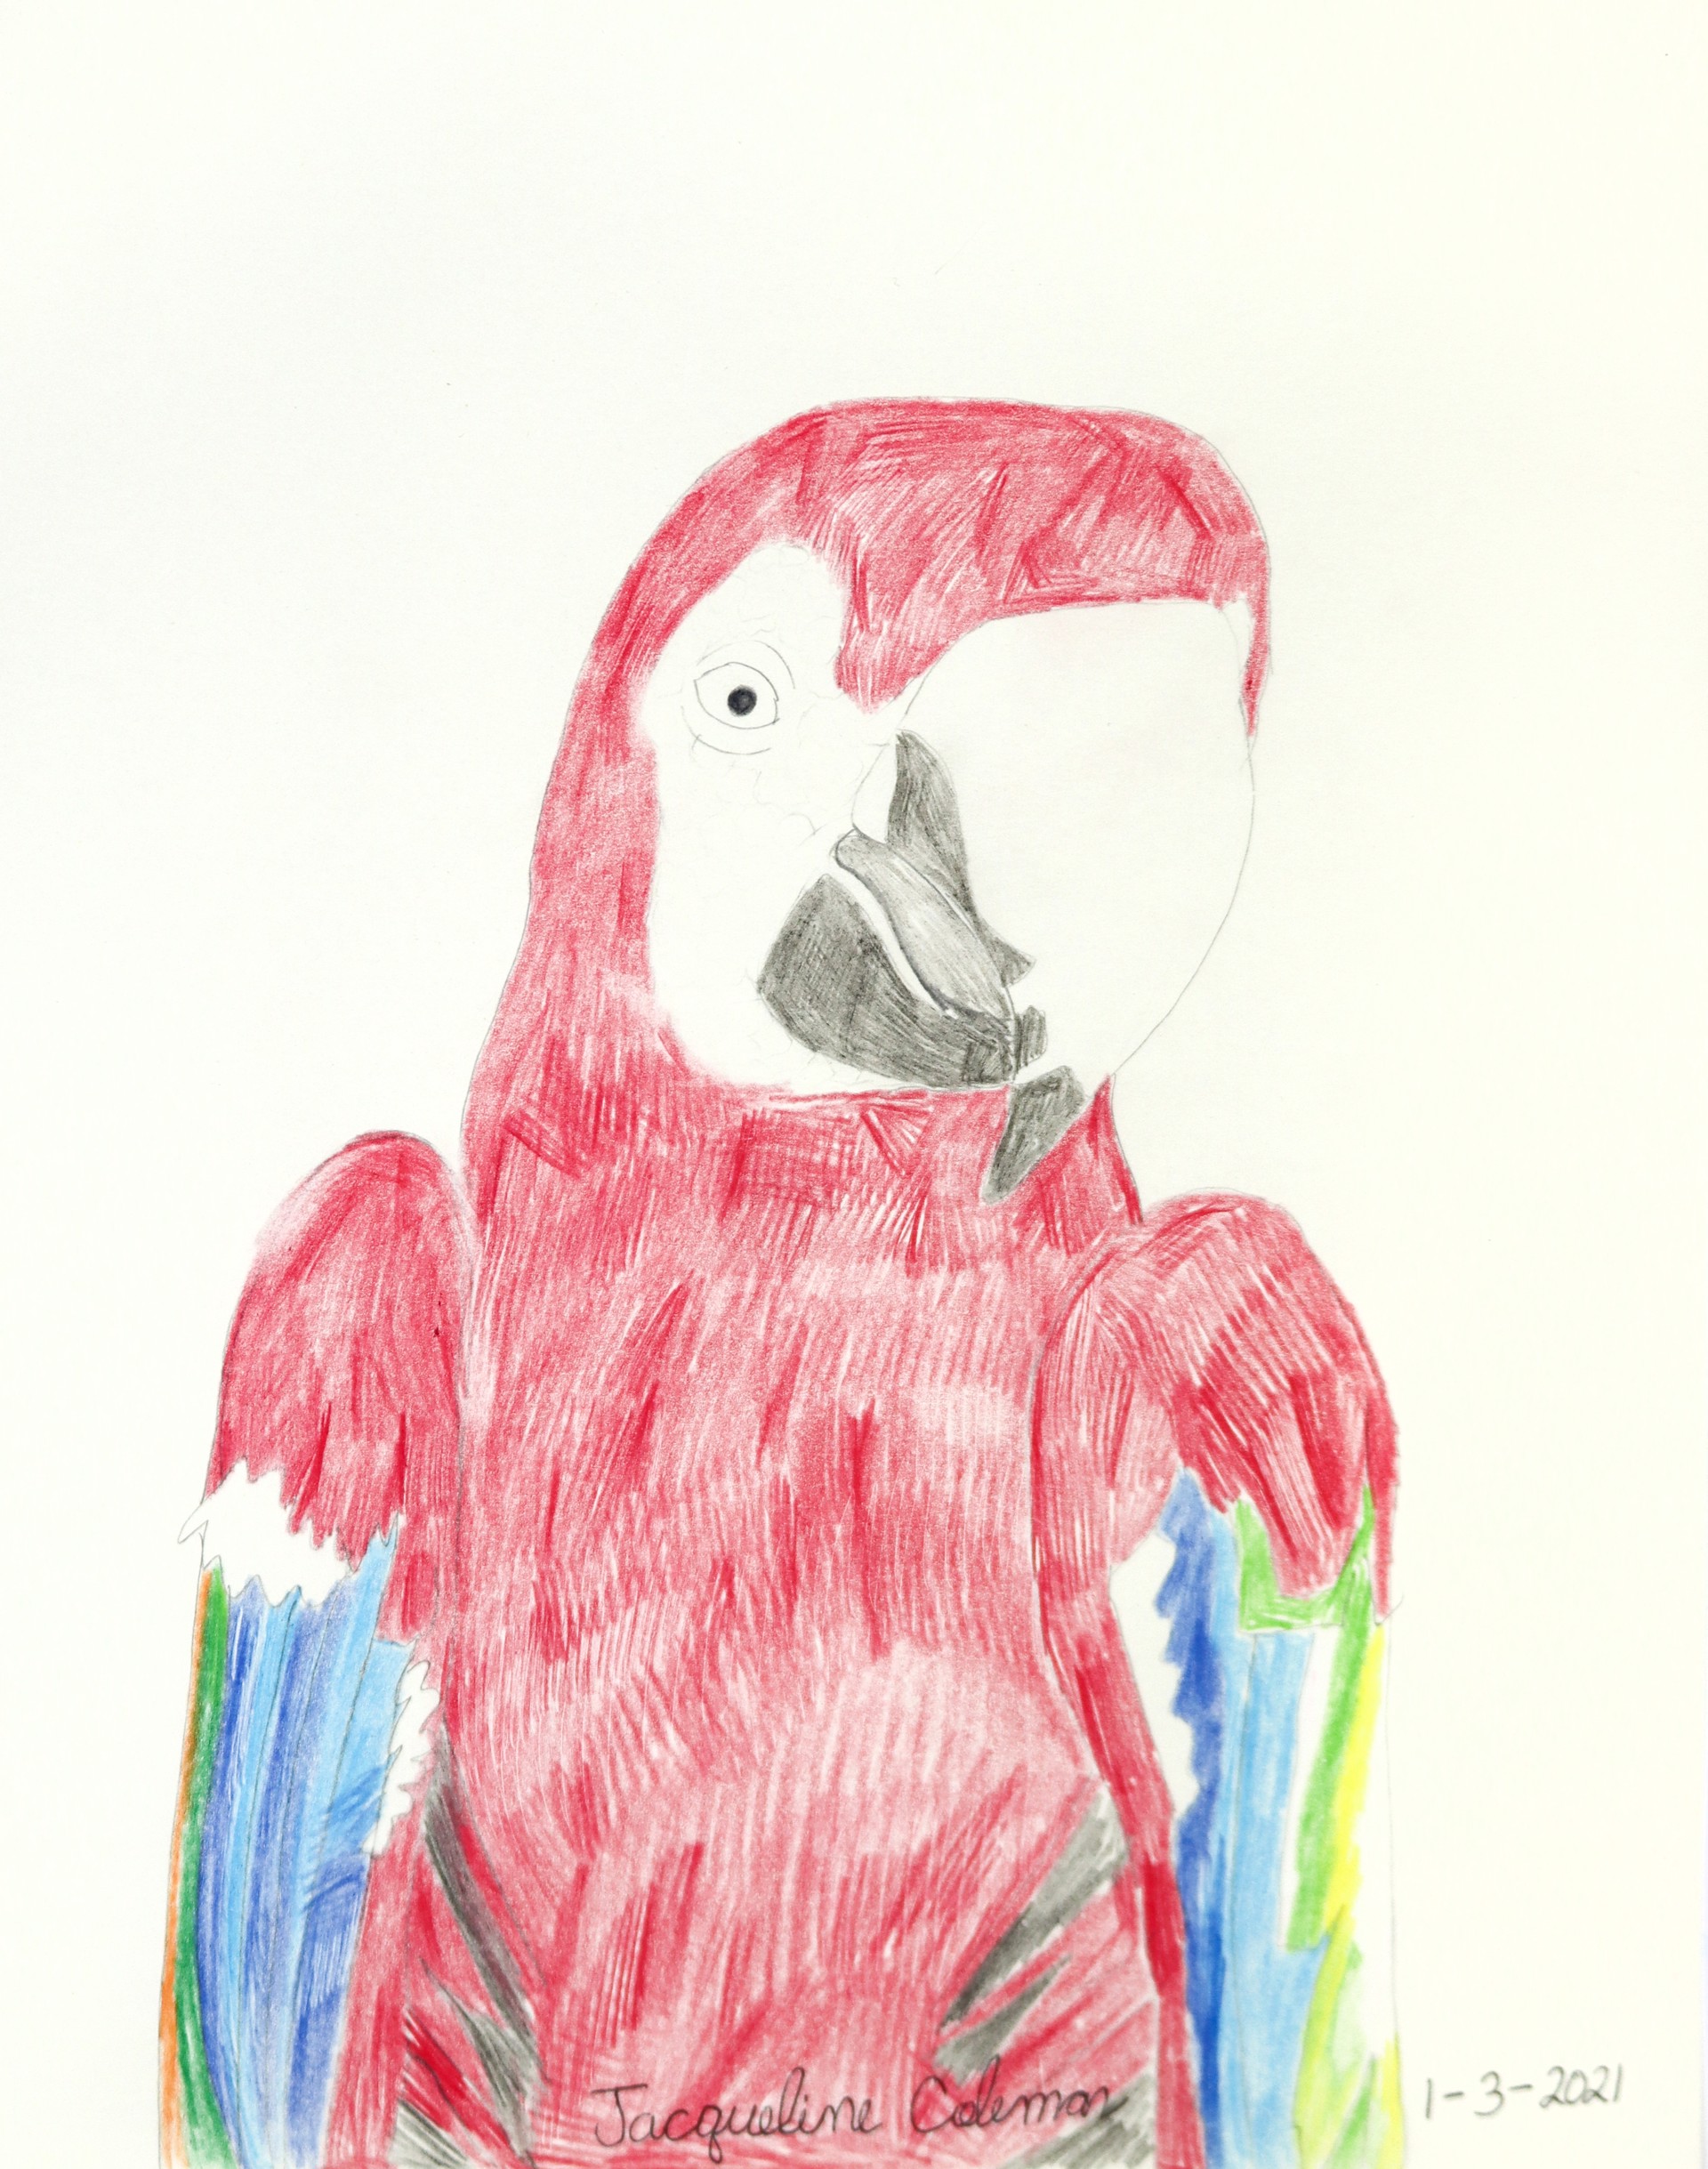 Parrot by Jacqueline Coleman